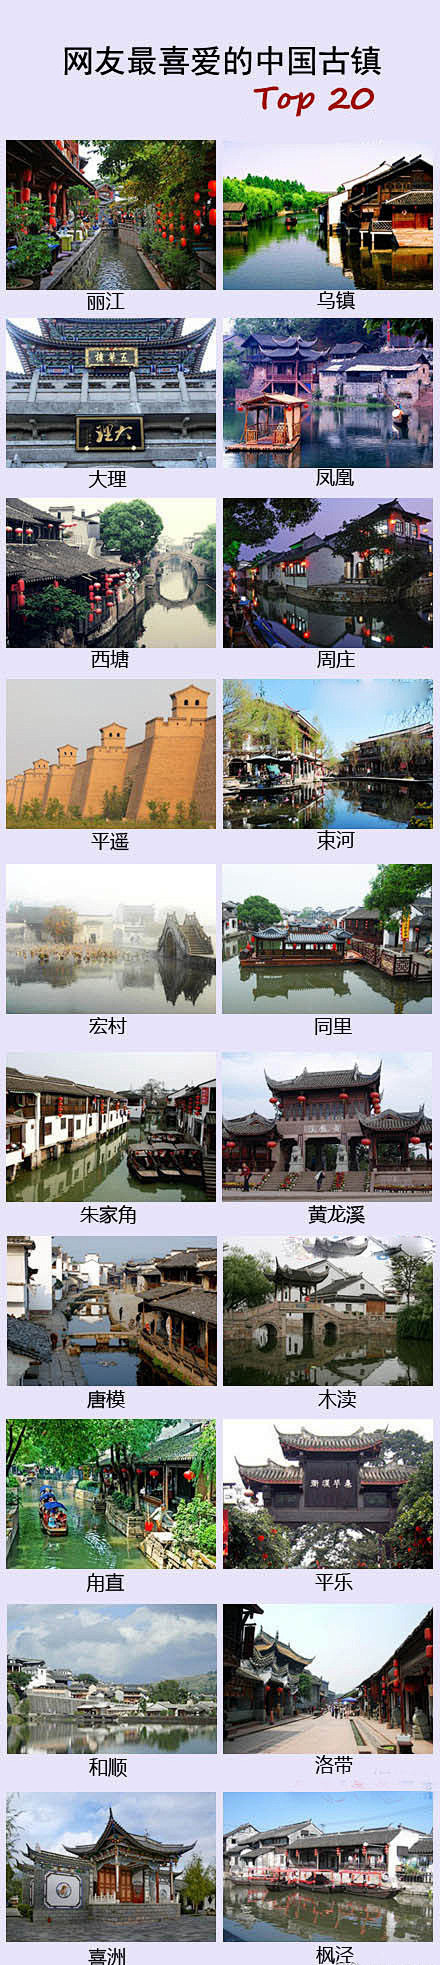 20个古镇——丽江、乌镇、大理、凤凰、西...